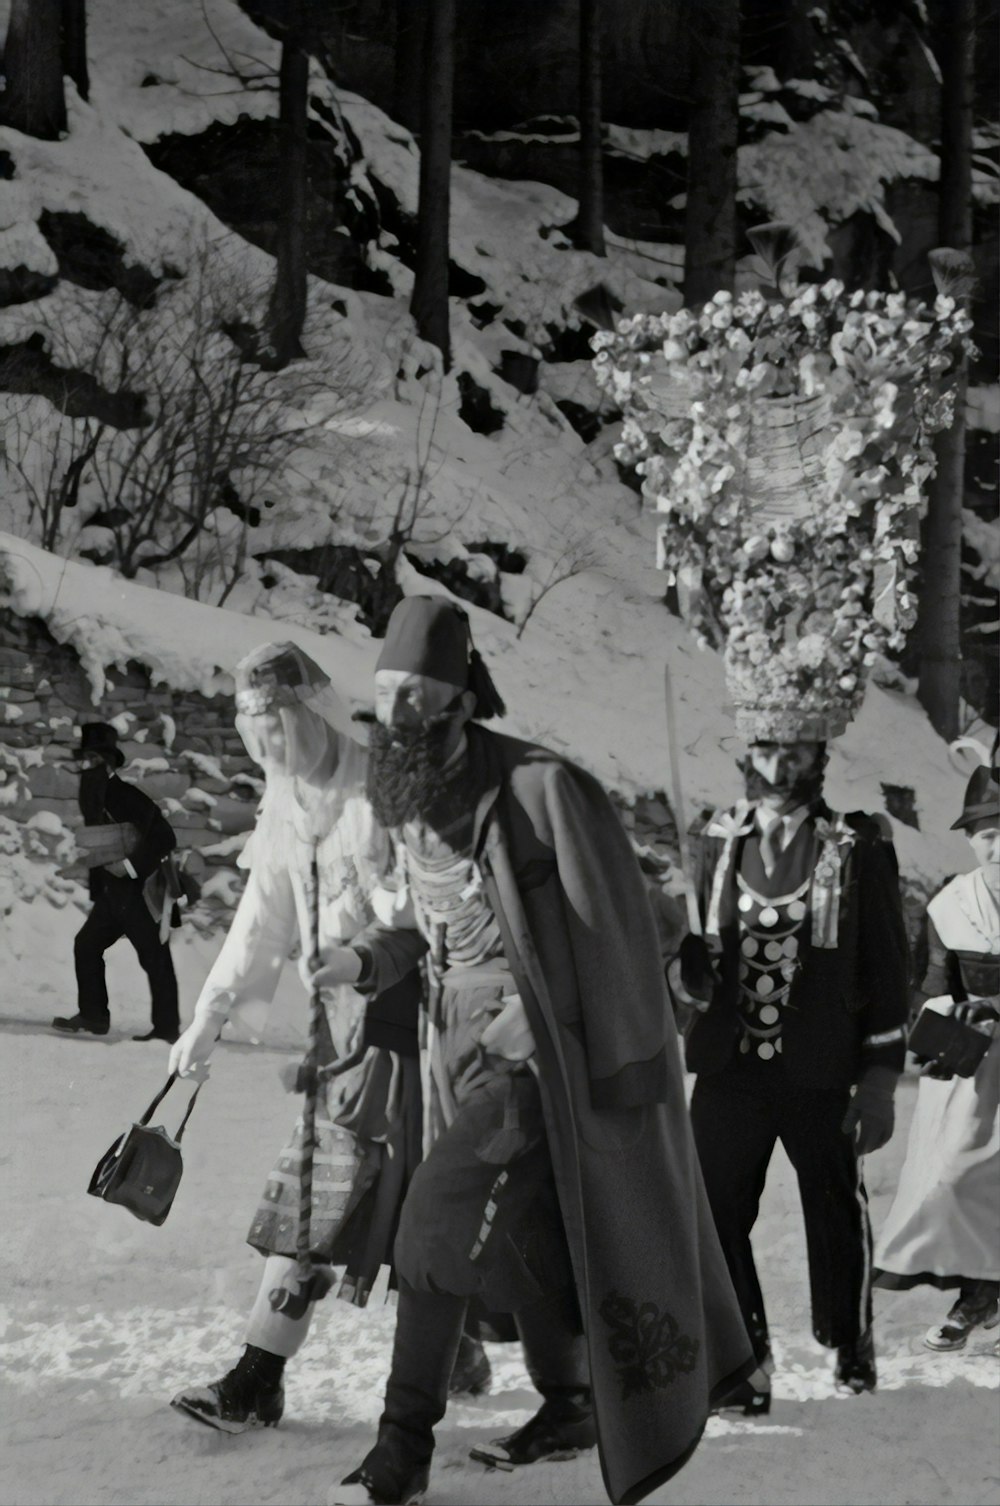 Fotografía en escala de grises de hombres caminando sobre la nieve